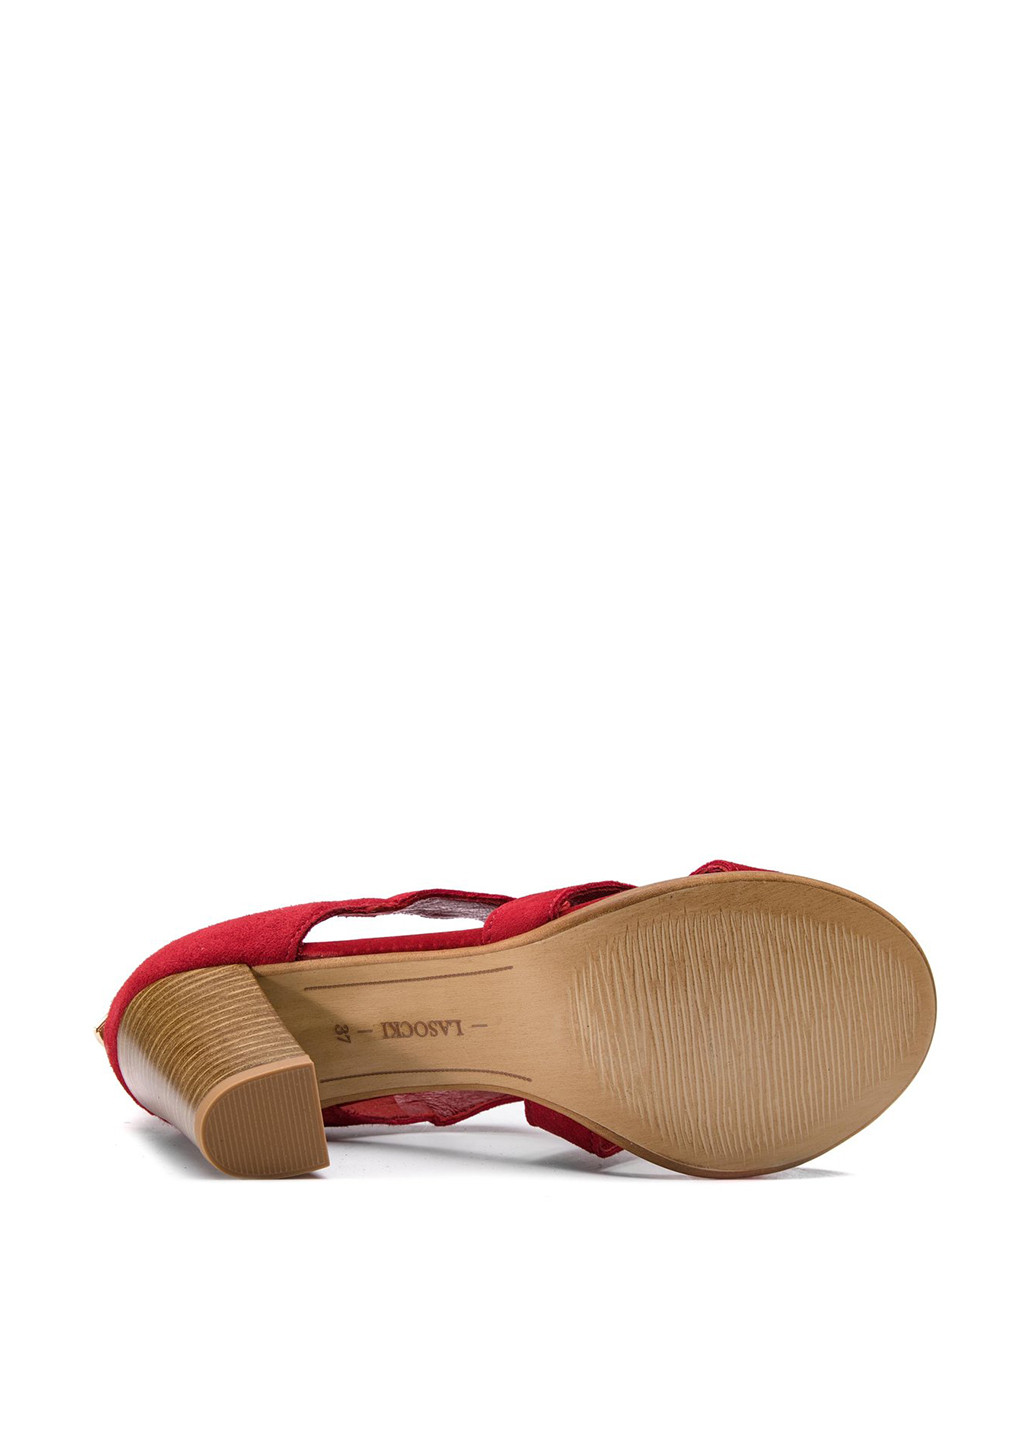 Красные сандалі 2610-01 Lasocki на молнии с металлическими вставками